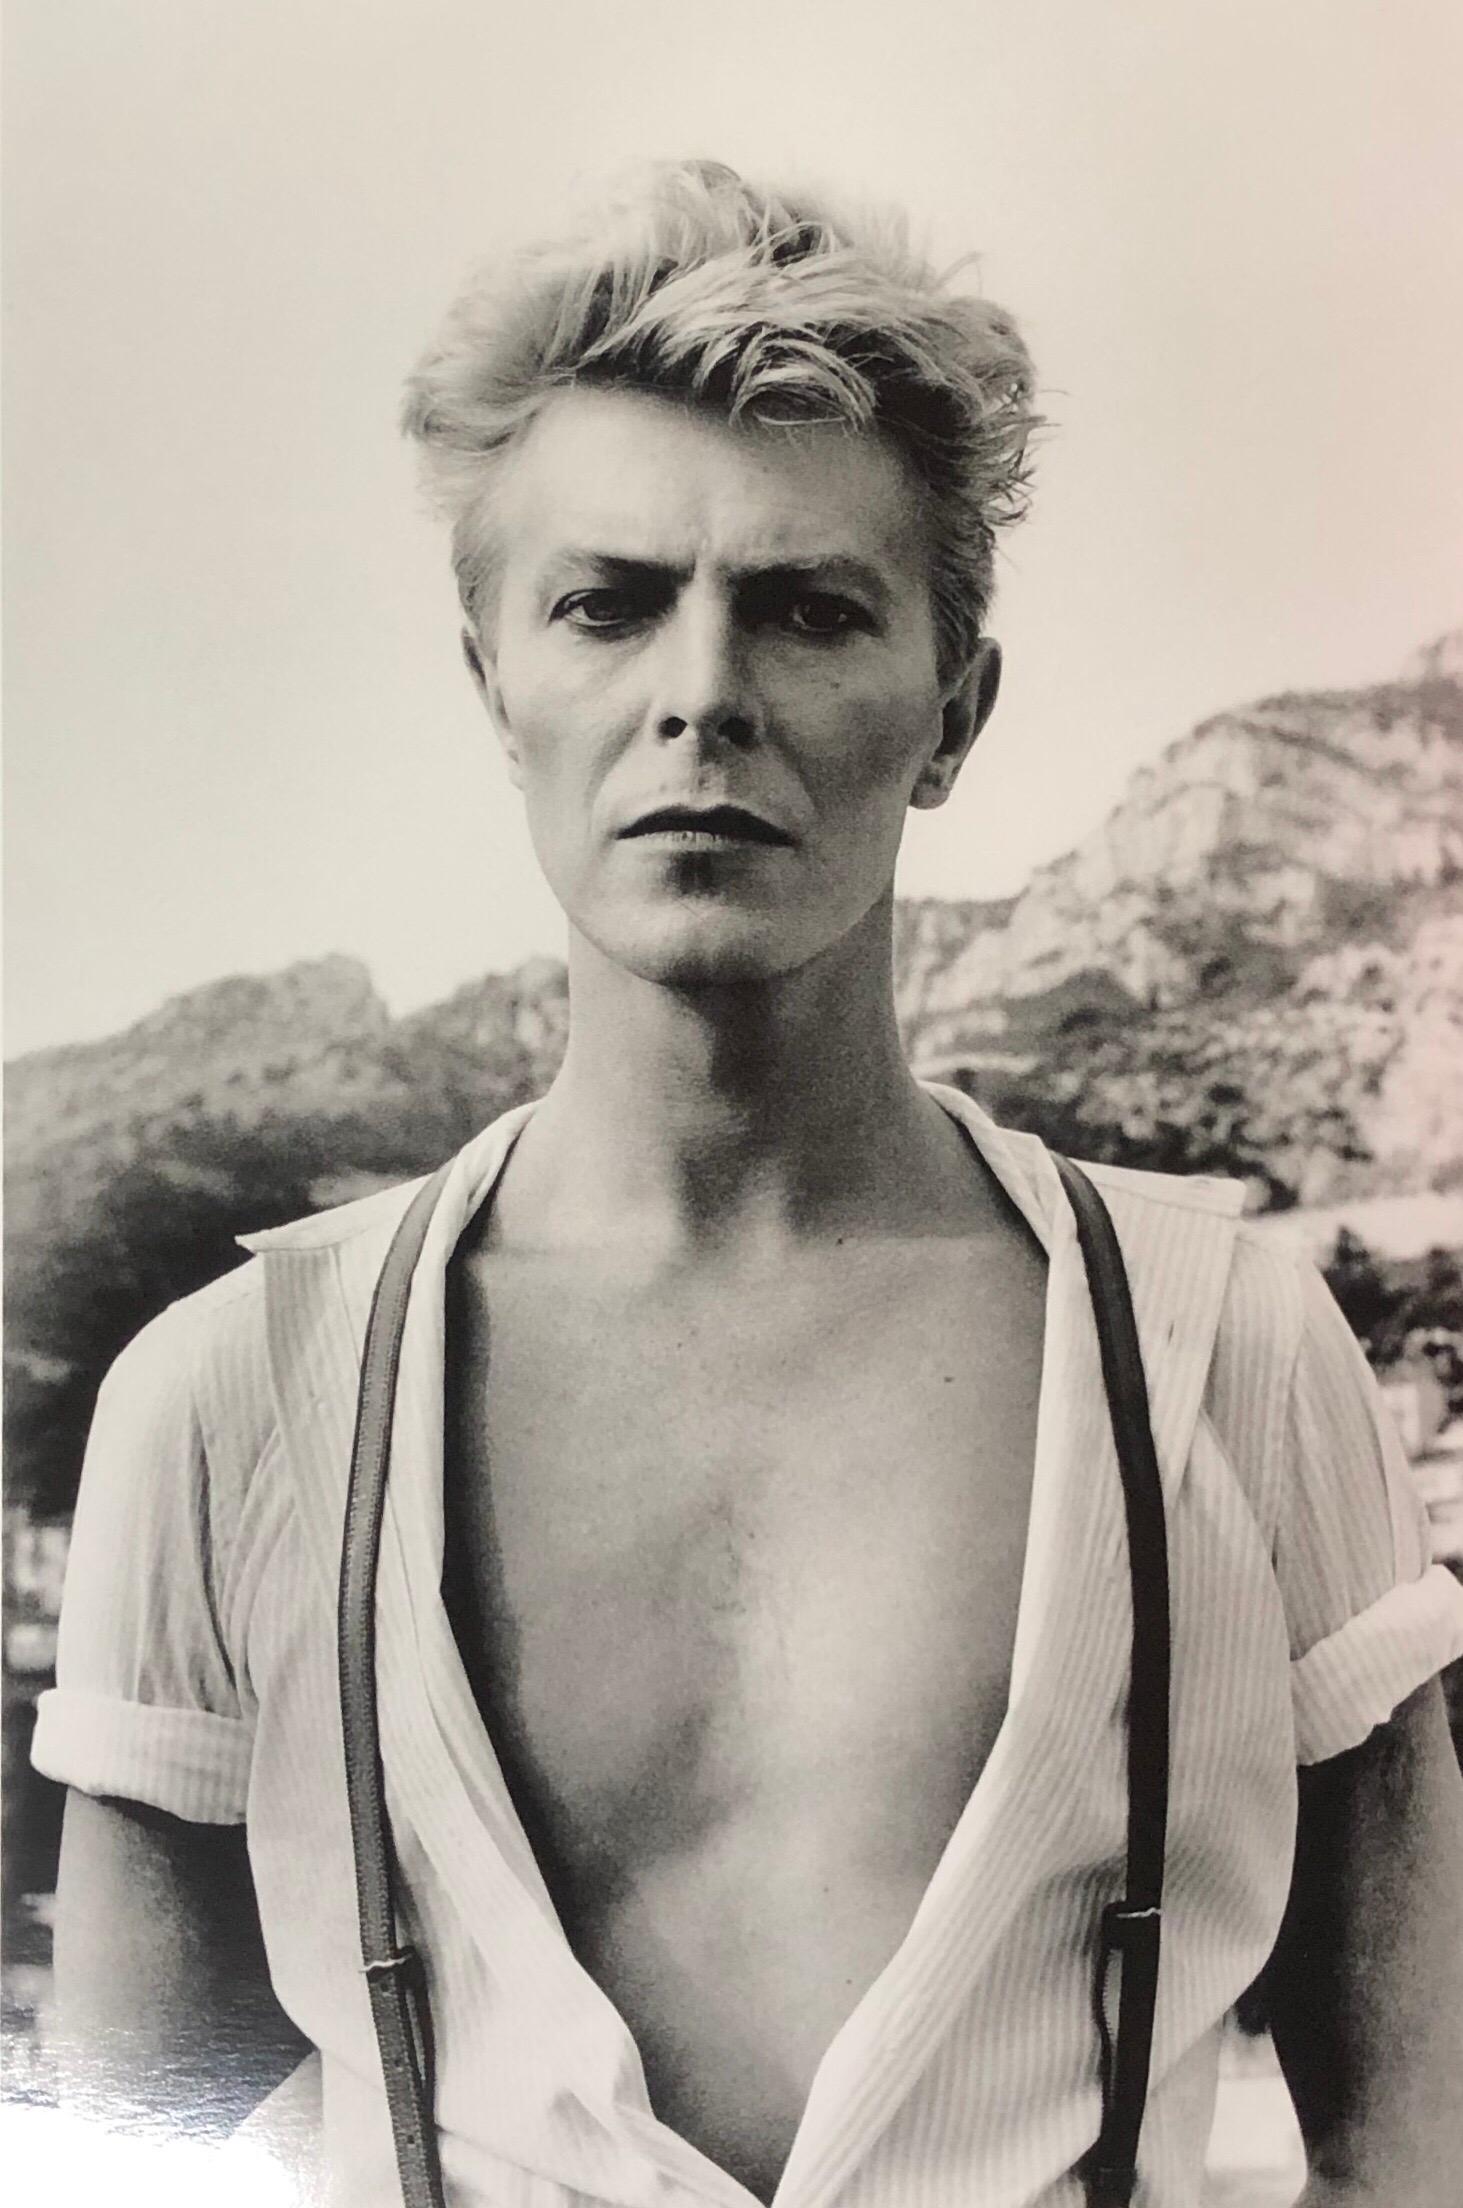 Diese ikonische Aufnahme von Newtons großem Freund David Bowie ist eine seiner besten Aufnahmen, die er in sein berühmtes Buch "Sumo" aufnahm. Dieses außergewöhnliche Vintage-Foto wurde 1983 in Monte Carlo aufgenommen und bietet eine seltene